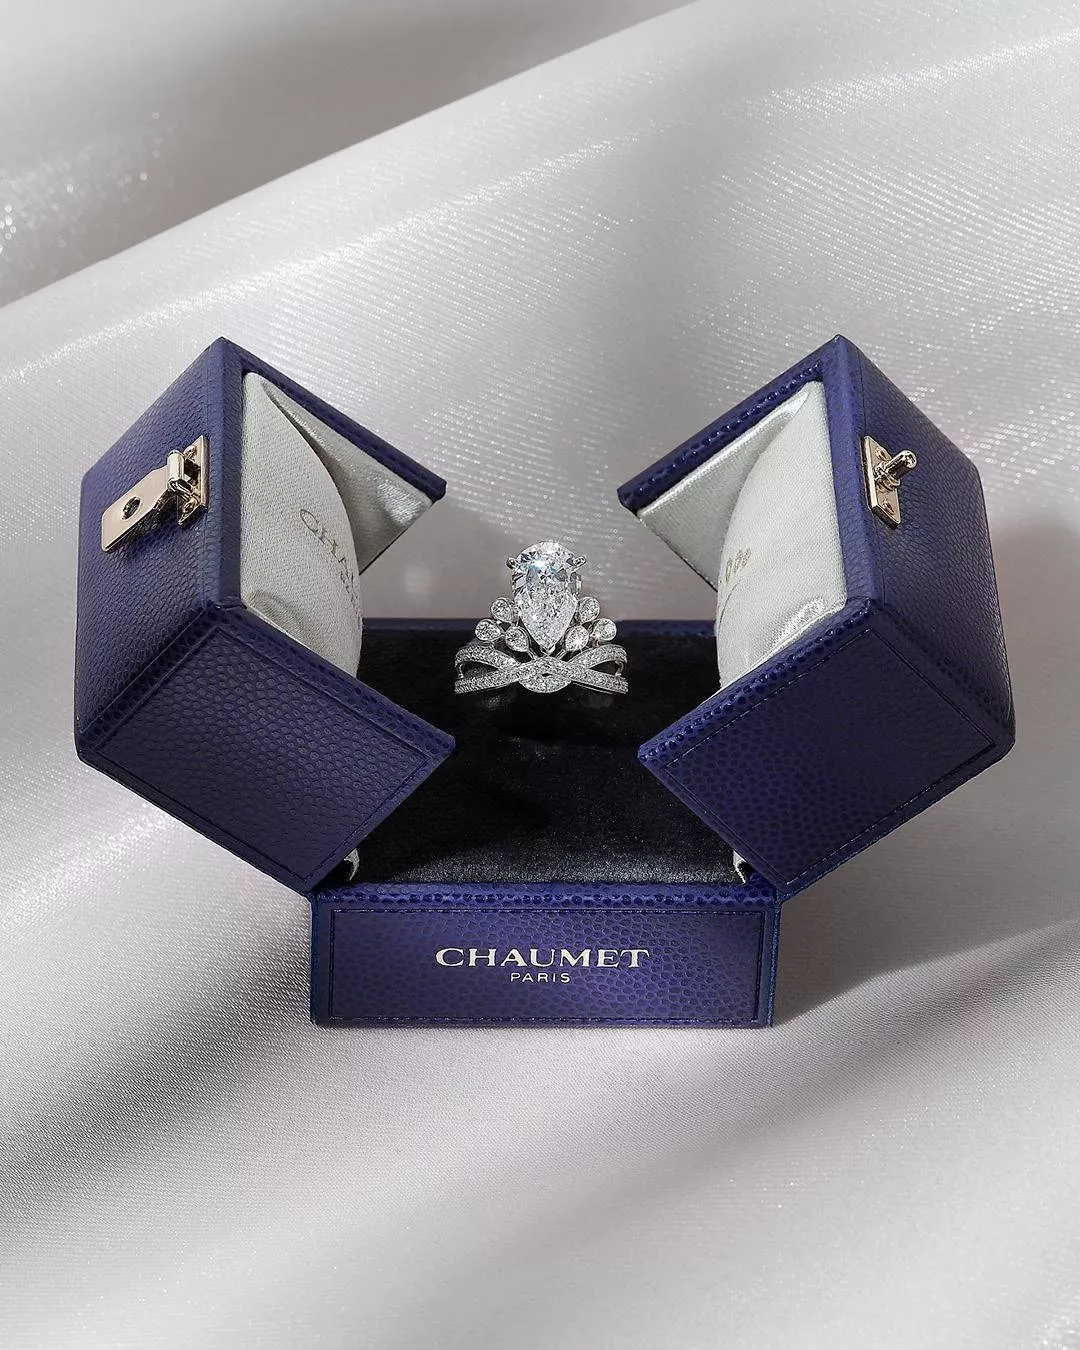 مجموعة مجوهرات Crown Your Love من Chaumet تتوّج الحب بطريقة مميّزة